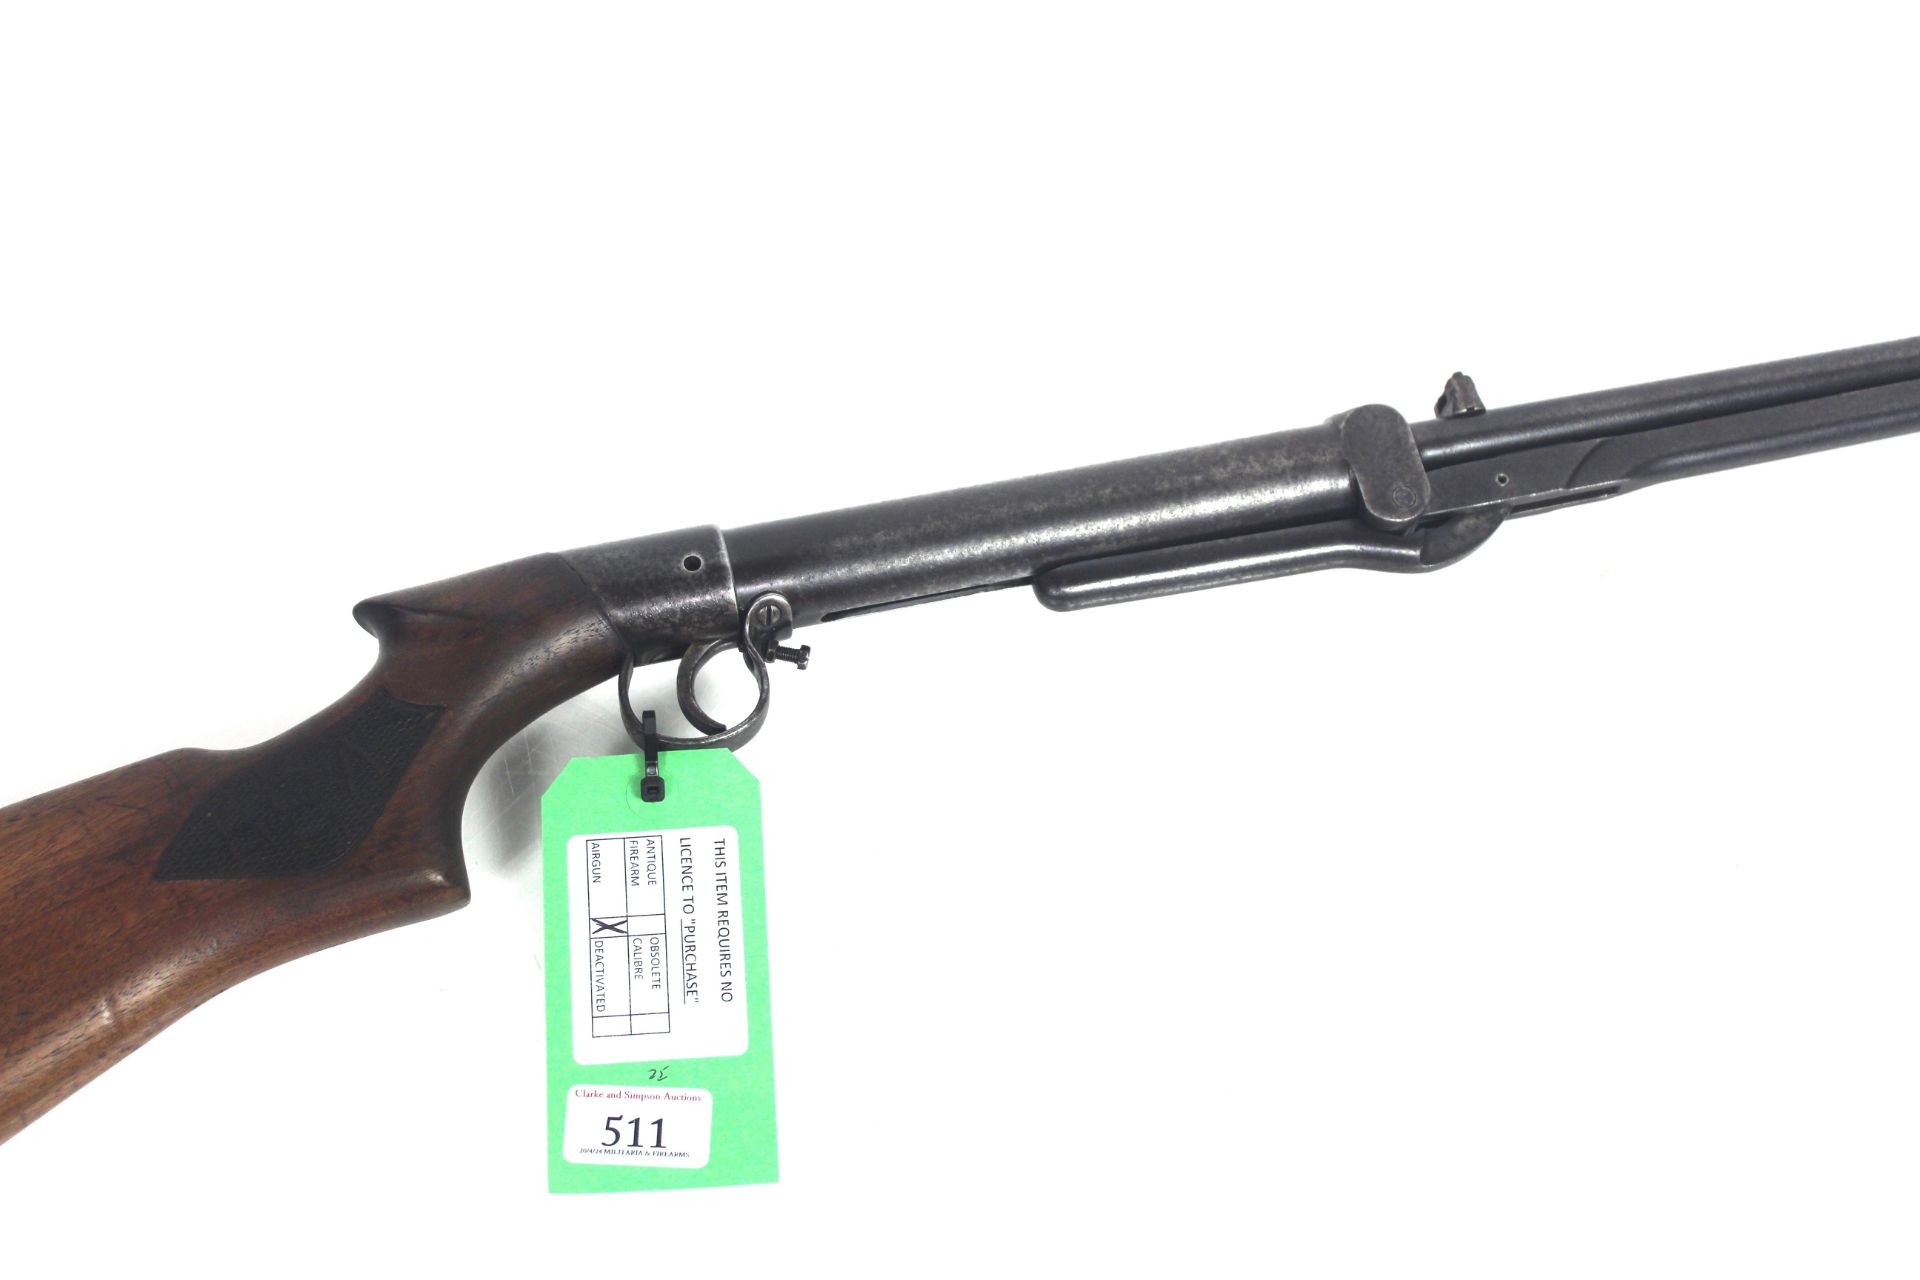 A B.S.A. Light / Ladies model .177 Cal. air rifle